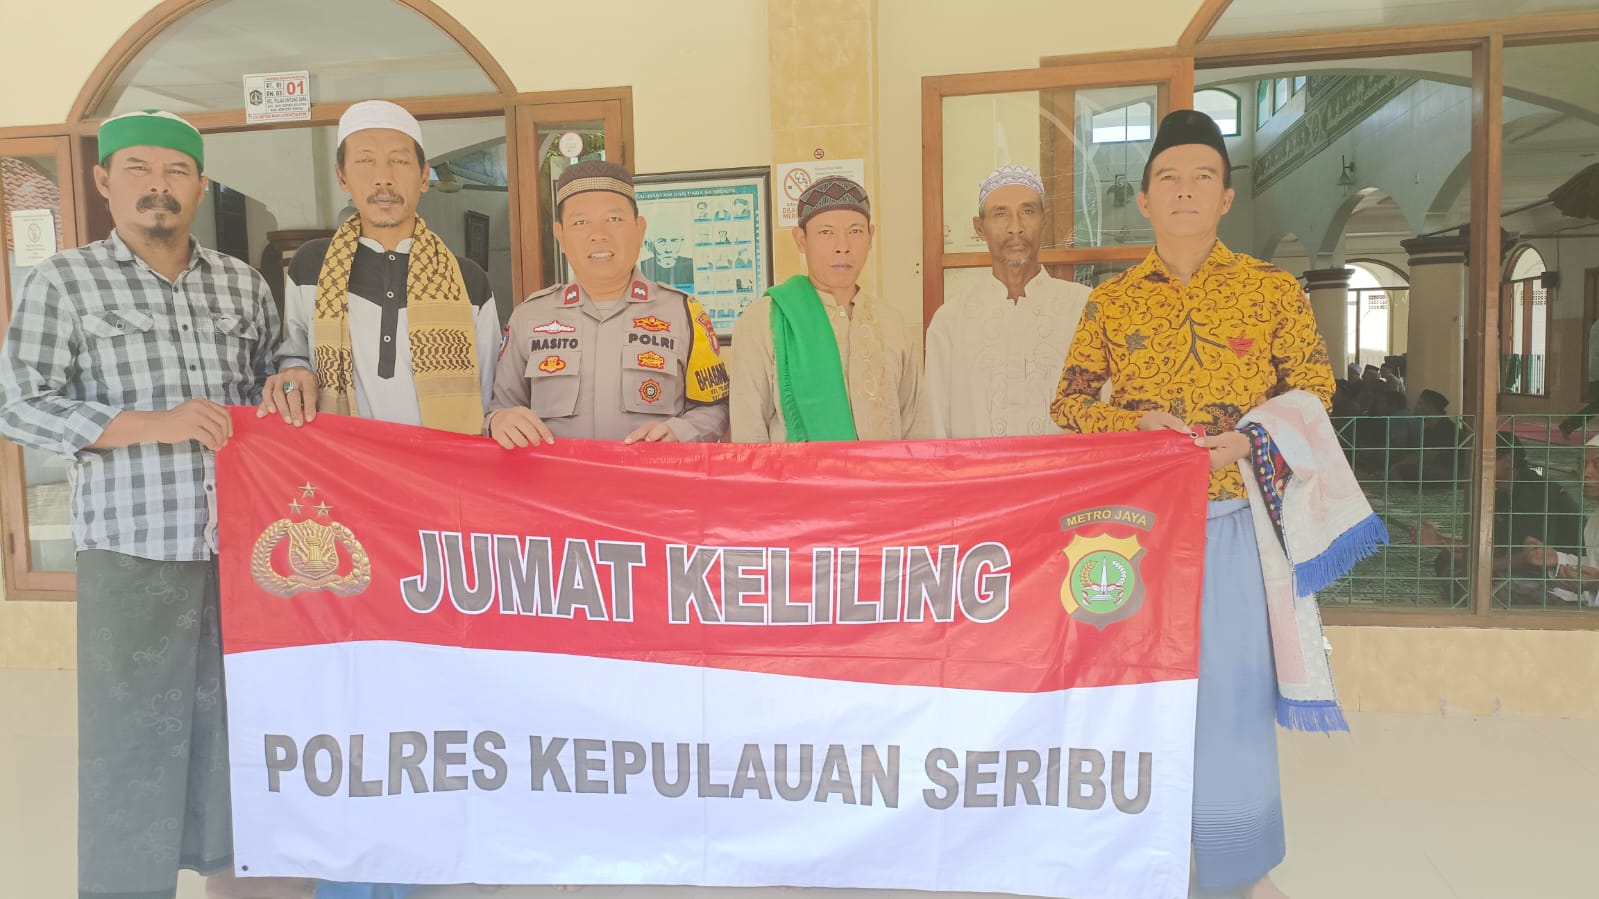 Bhabinkamtibmas Pulau Untung Jawa, Polres Kepulauan Seribu, Ajak Warga Jaga Kedamaian Pasca Pemilu Melalui 'Jumat Keliling'